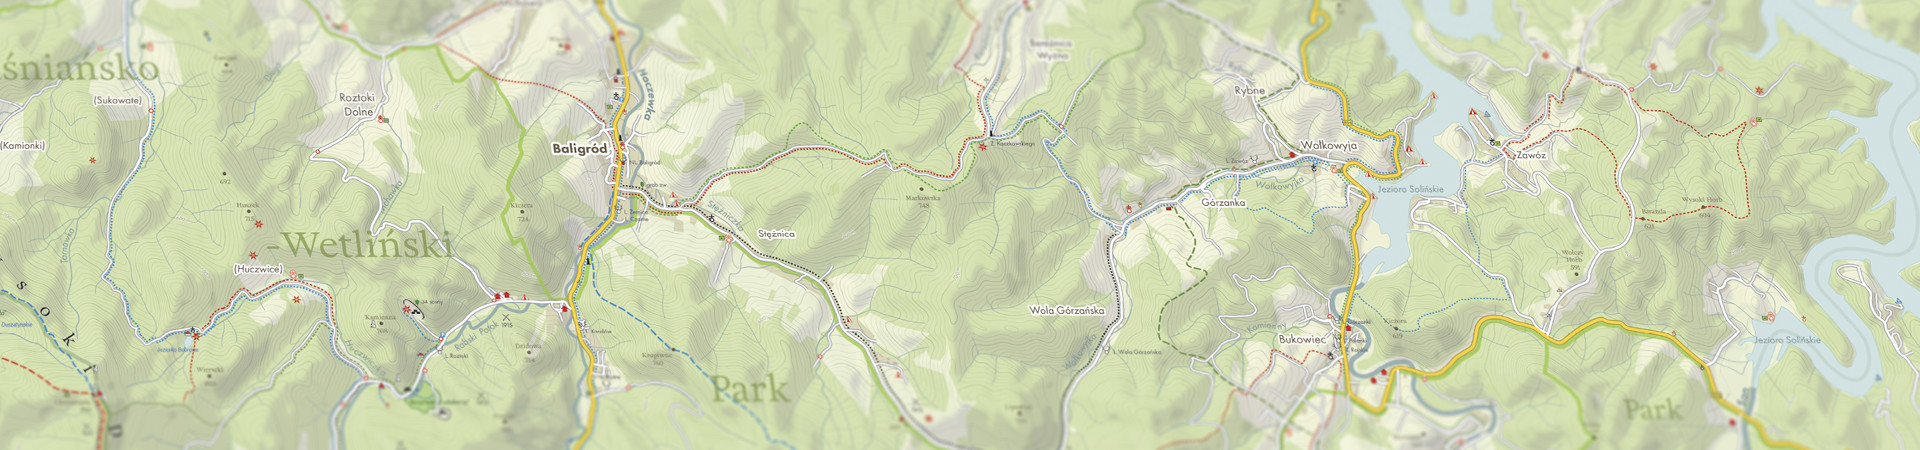 mapa_baligrod_2